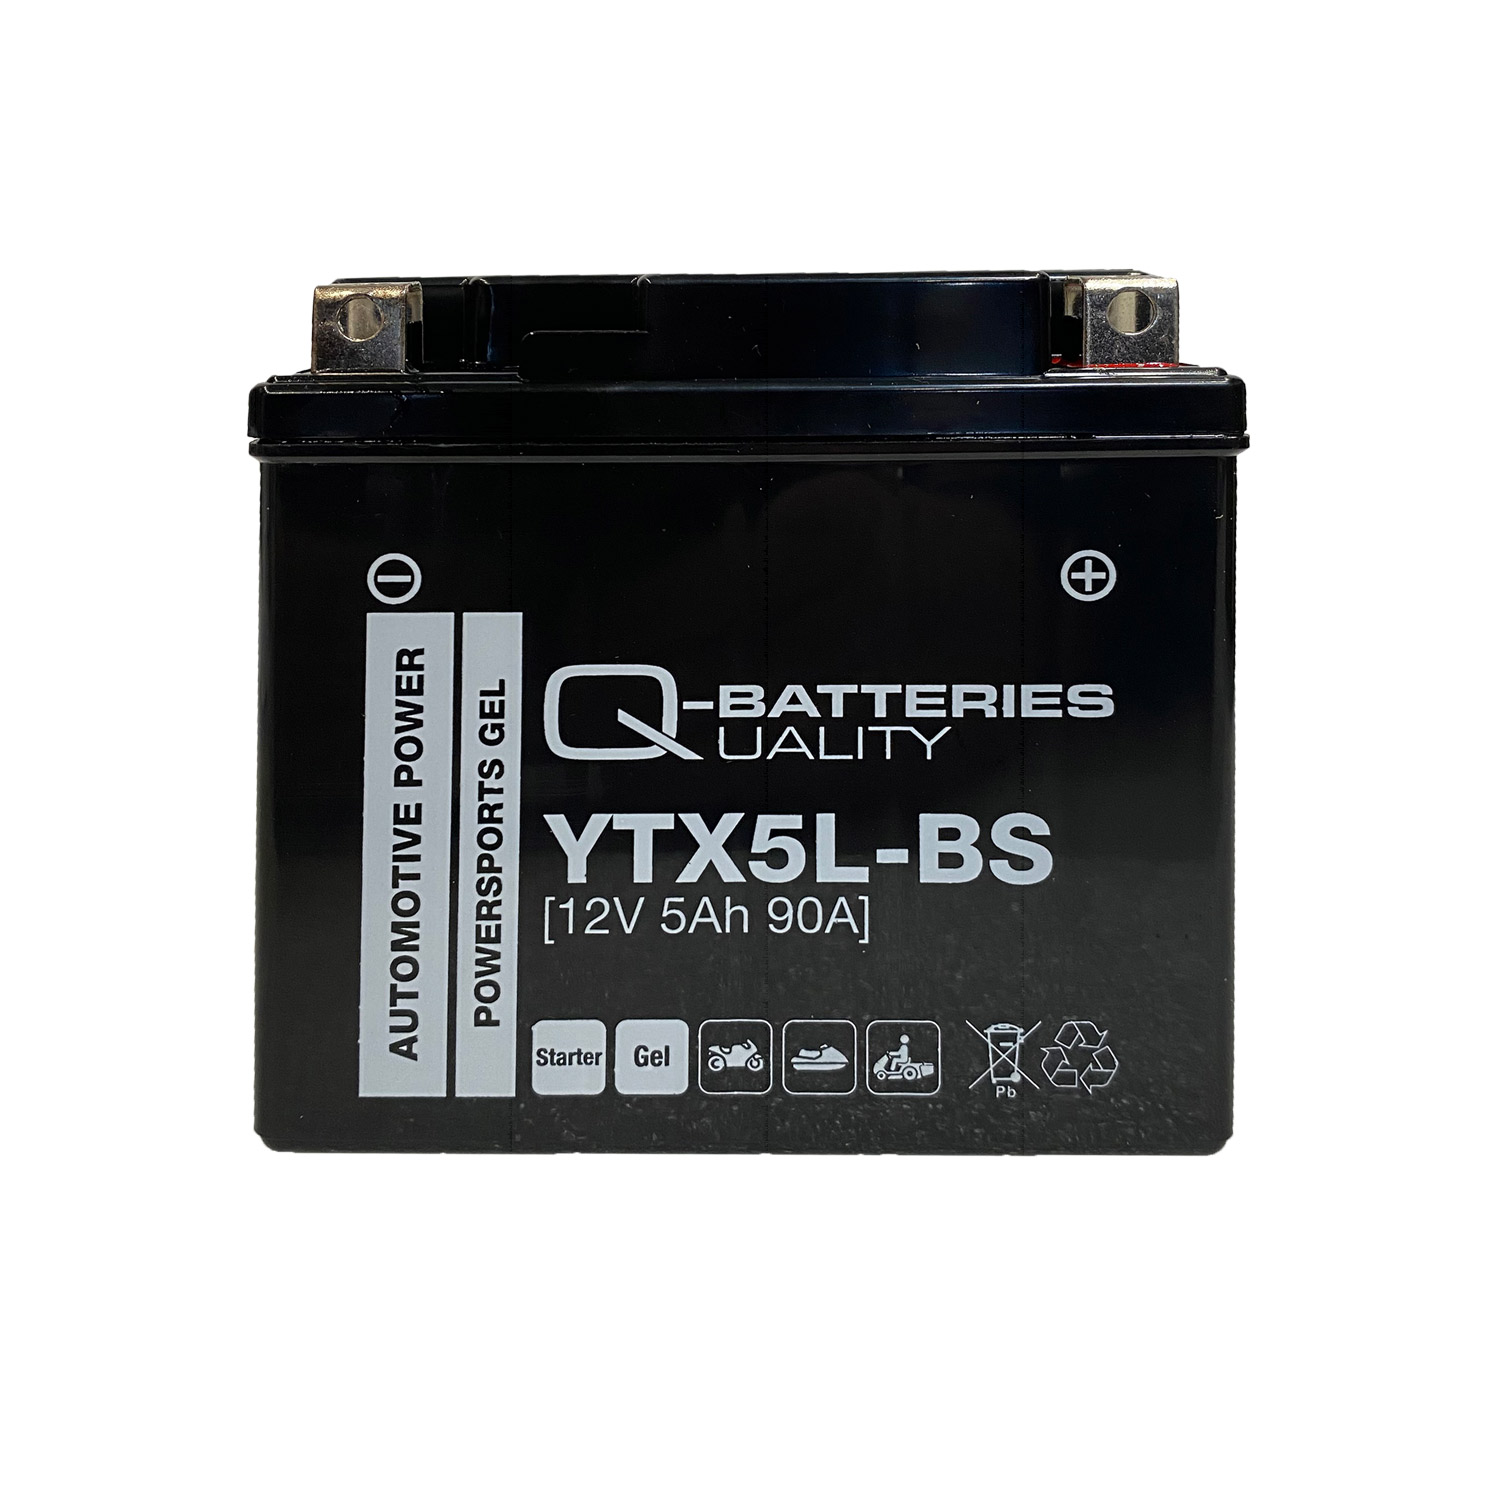 Q-Batteries Motorradbatterie 5L-BS Gel 50412 12V 5Ah 90A